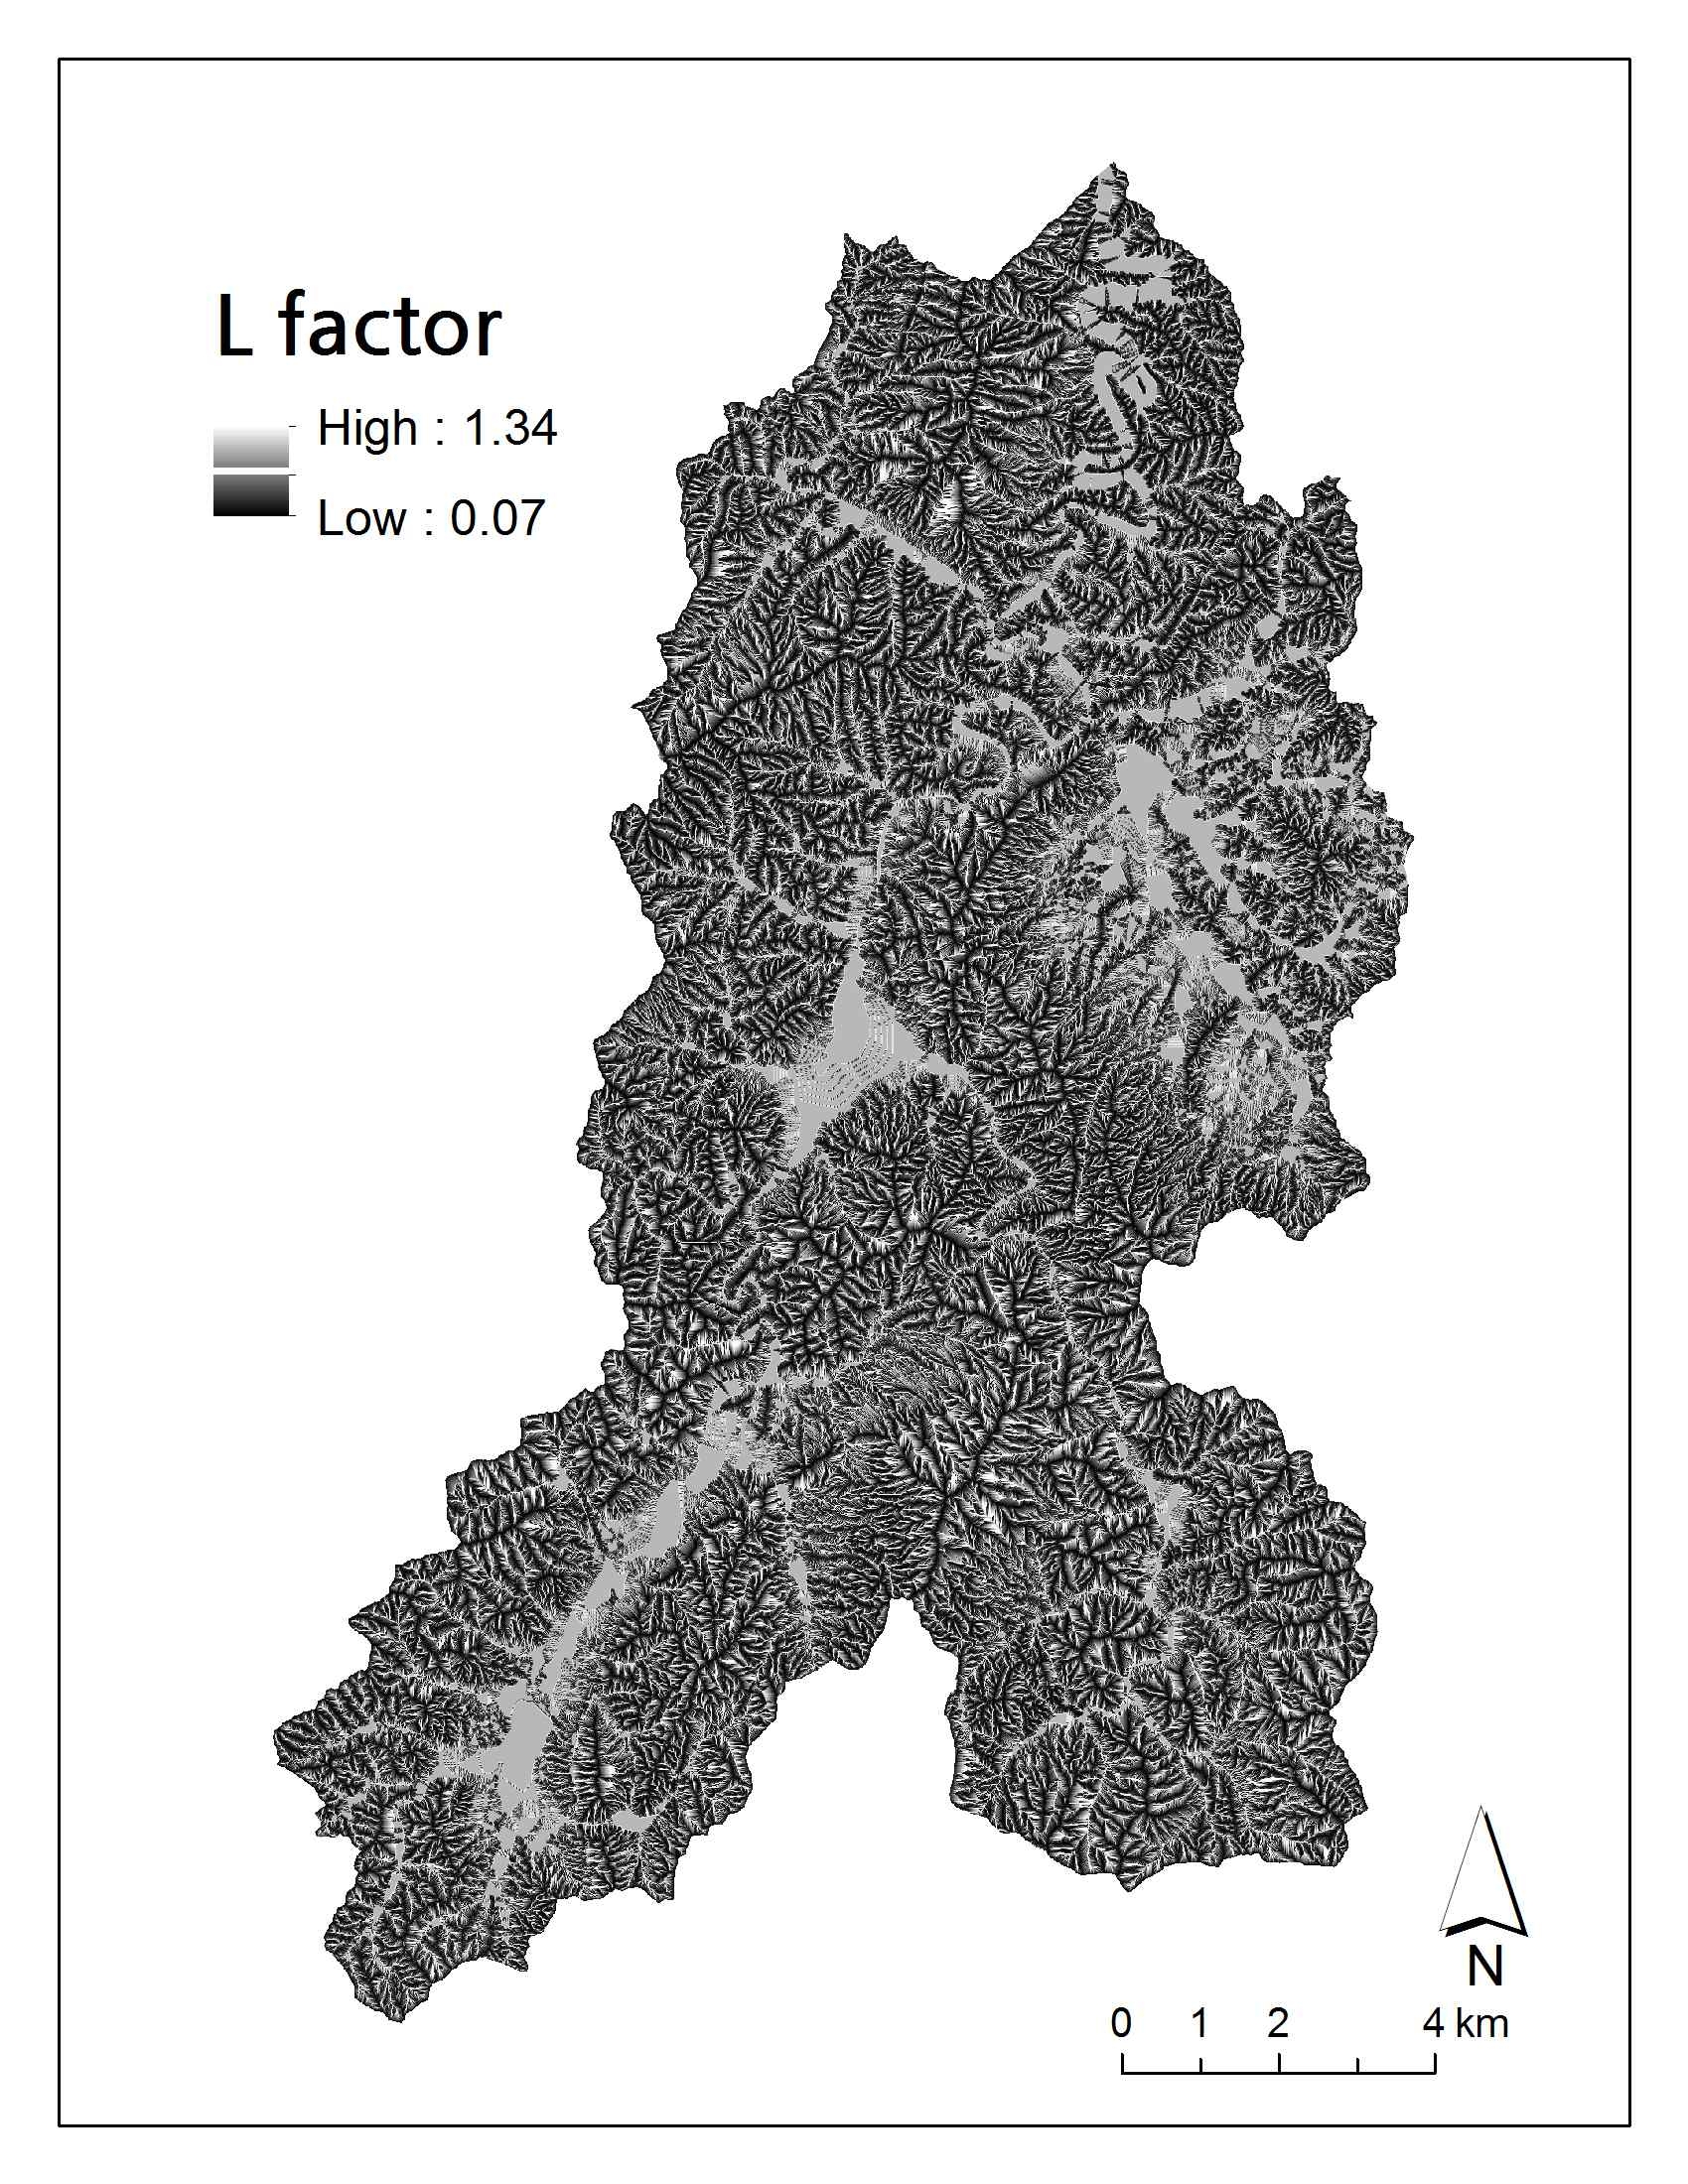 Length factor(L) of soil erosion surface